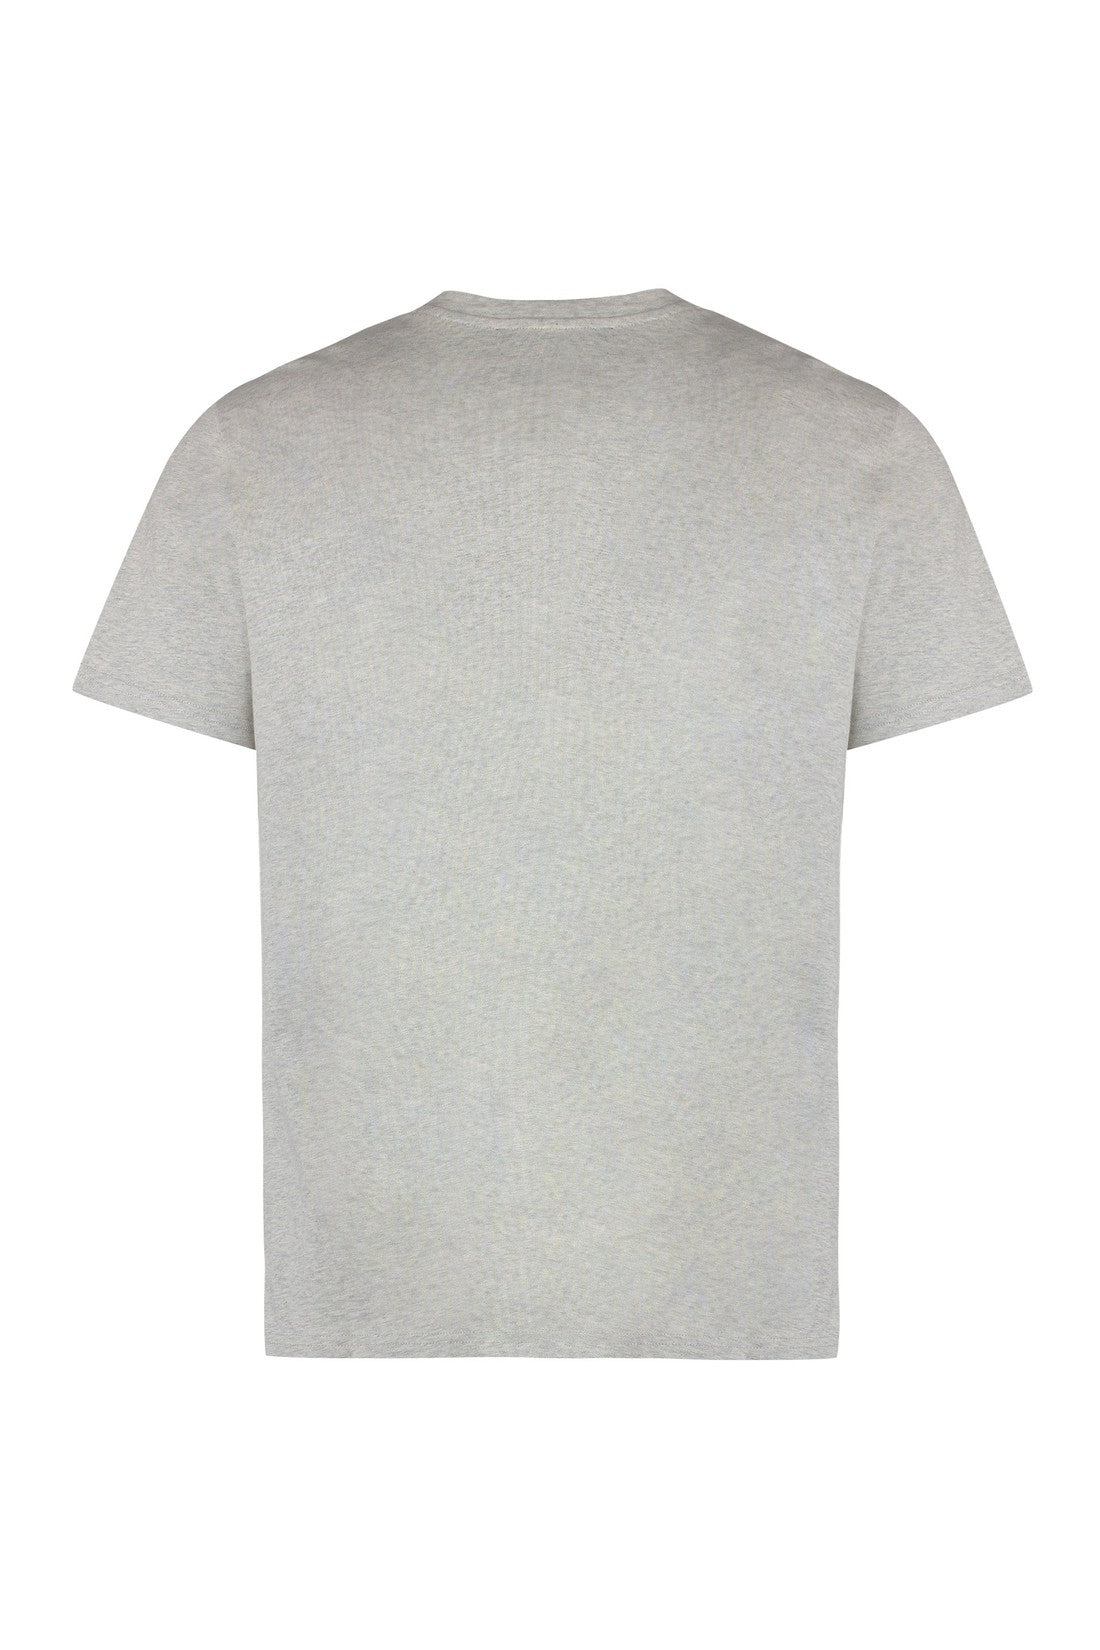 A.P.C.-OUTLET-SALE-Raymond cotton crew-neck T-shirt-ARCHIVIST